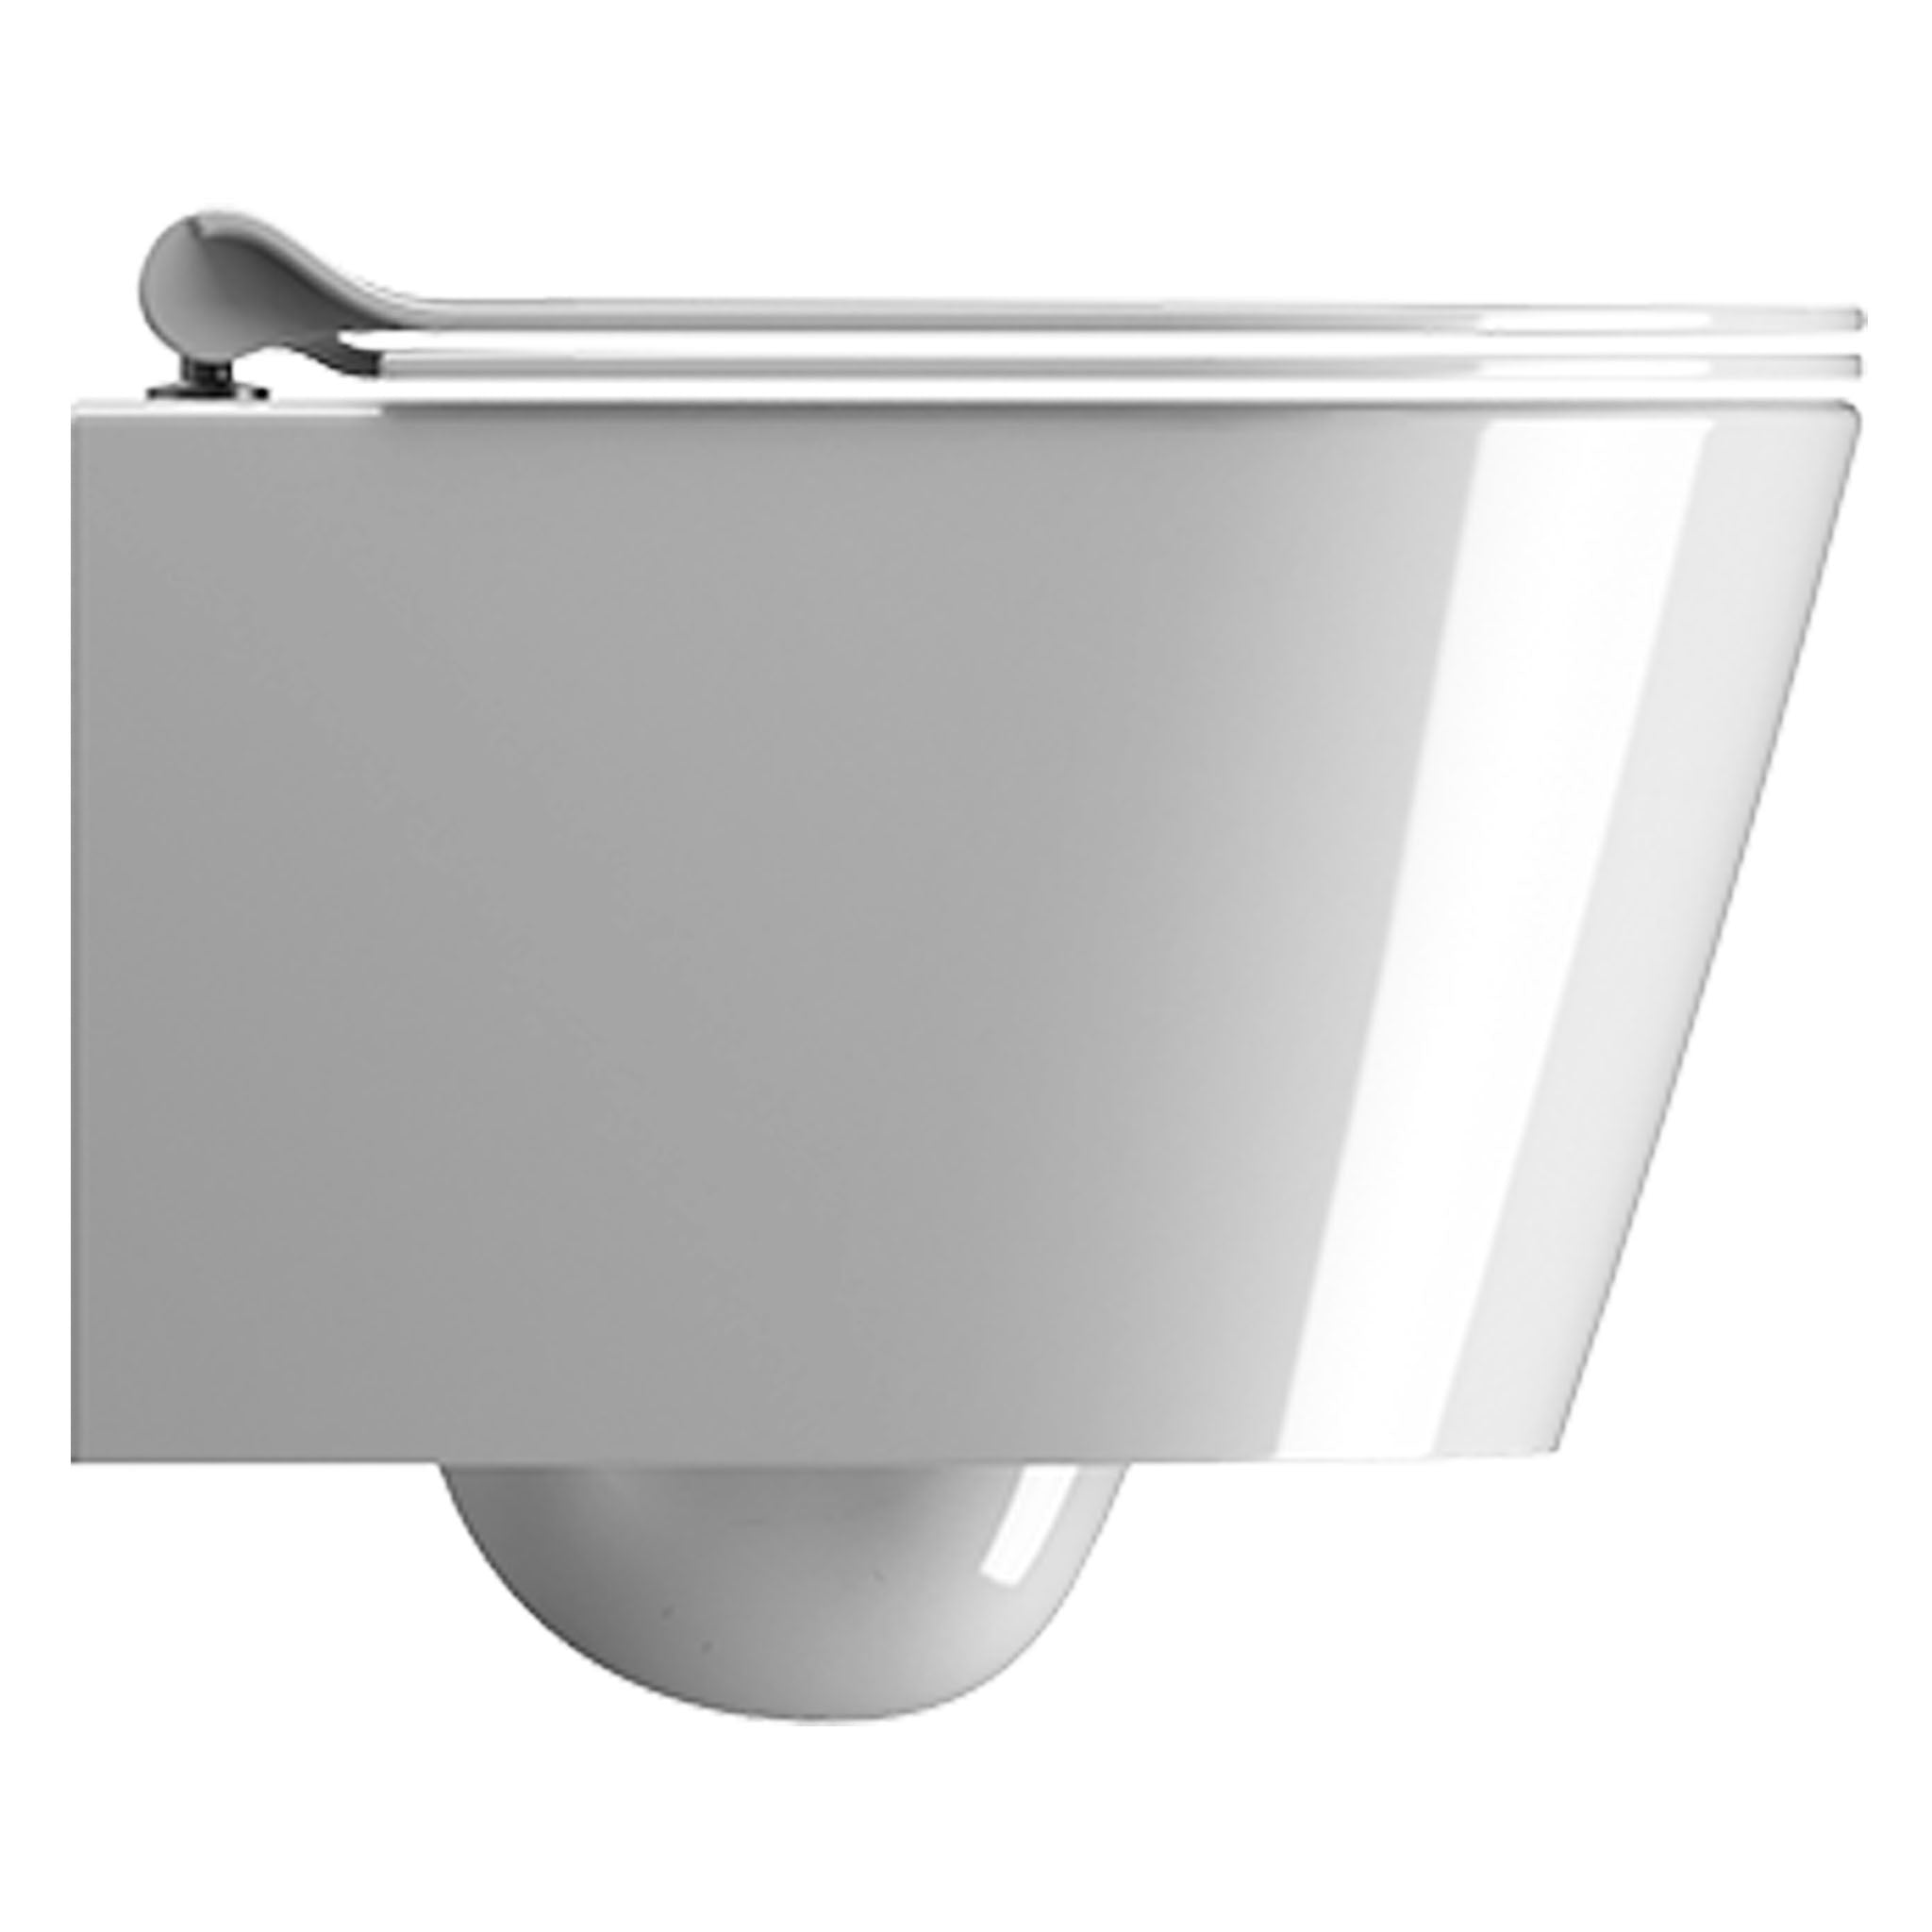 GSI Kube X 46/F Wall Hung WC Pan With Swirlflush (Without Seat)